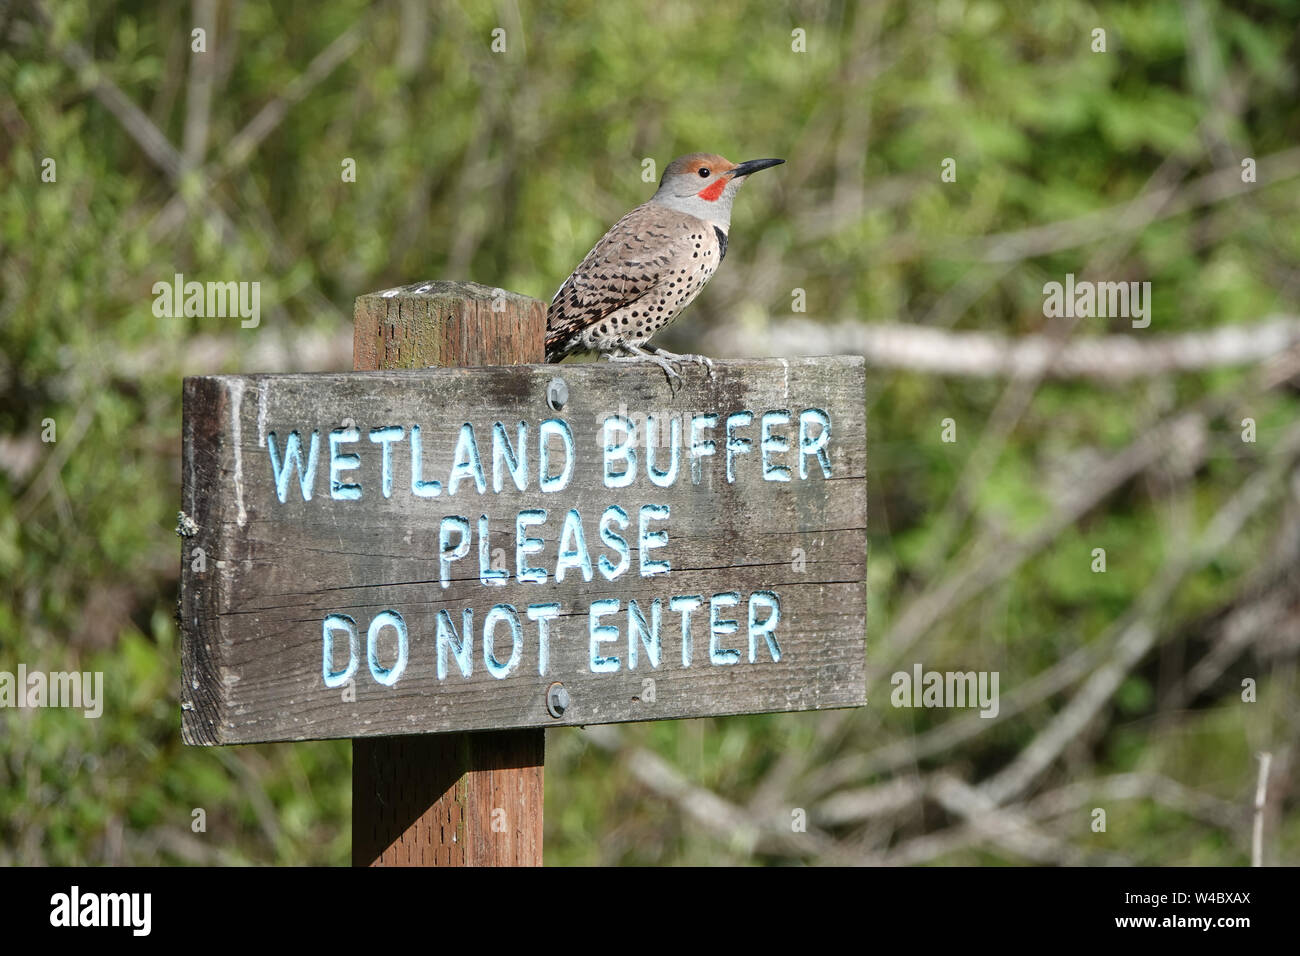 Männliche nördlichen flimmern oder flackern (Colaptes auratus) sitzen auf 'Feuchtgebiet bbuffer, bitte nicht eintreten"-Schild Stockfoto